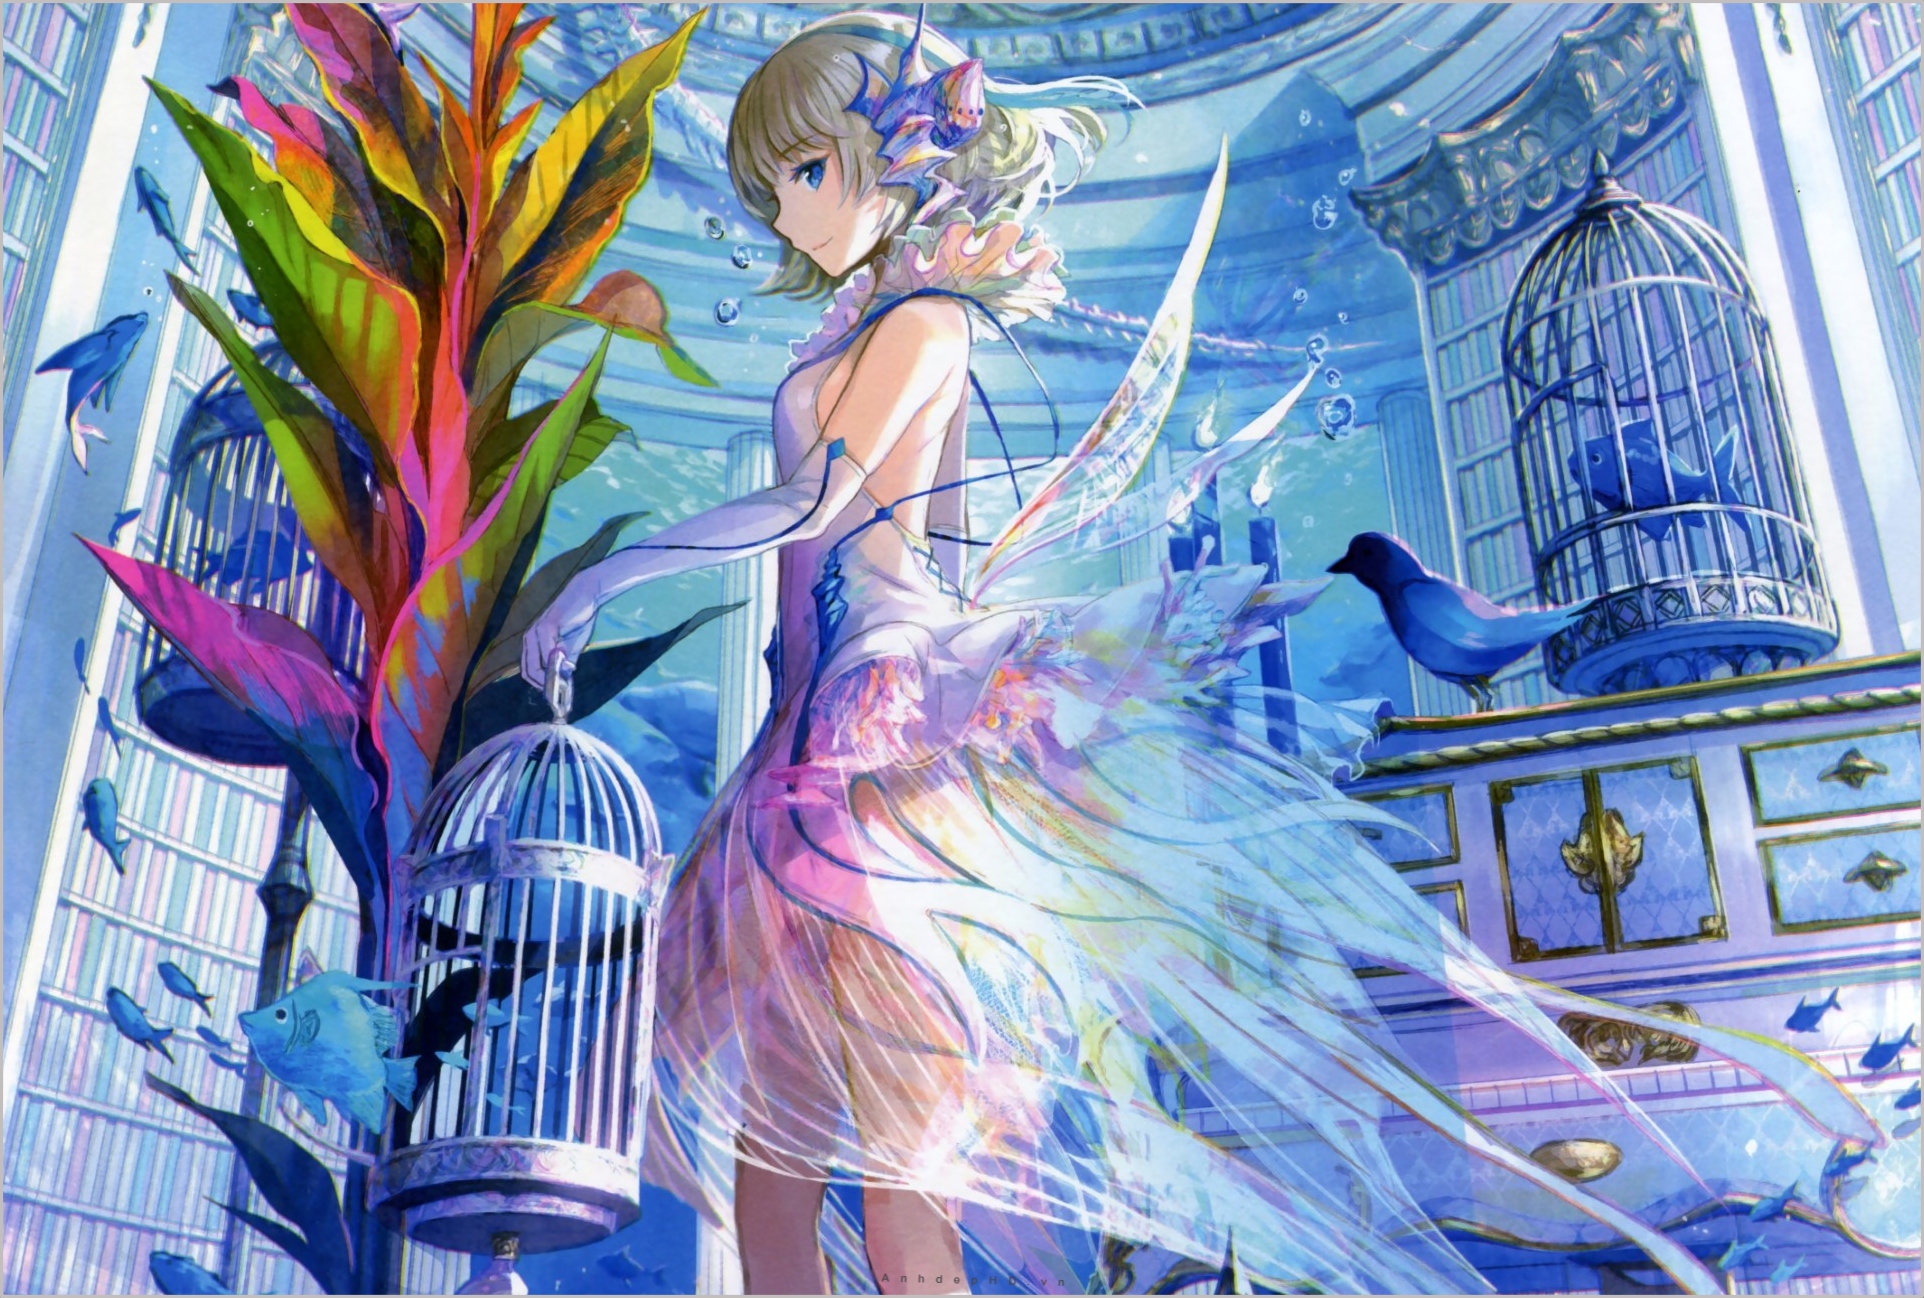 Hãy khám phá thế giới thiên thần đầy màu sắc và ma mị trong bộ Anime thiên thần có cánh. Những hình ảnh đẹp ngất ngây sẽ đưa bạn vào những cuộc phiêu lưu hấp dẫn và đầy thử thách.